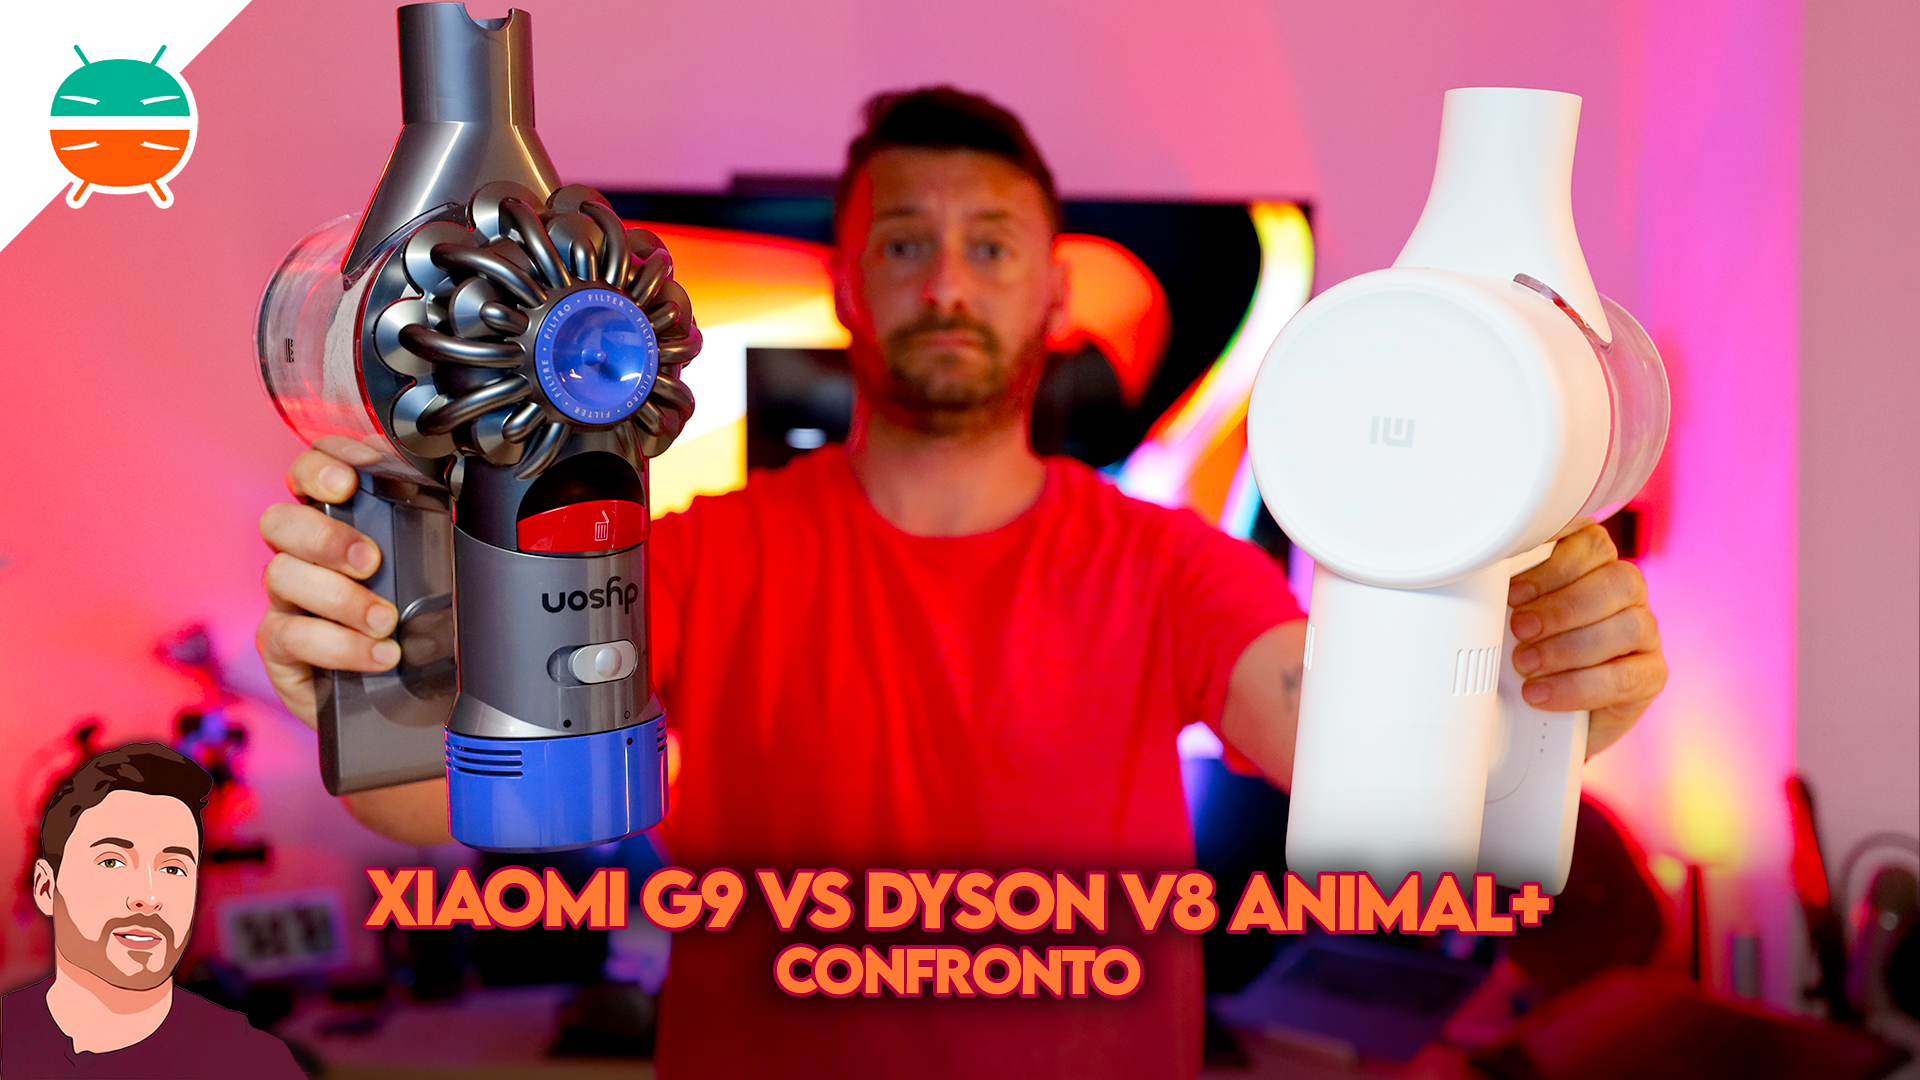 erger maken Negen schending Vergelijking Xiaomi G9 versus Dyson V8 Animal +: is het de moeite waard om  meer uit te geven? - GizChina.it